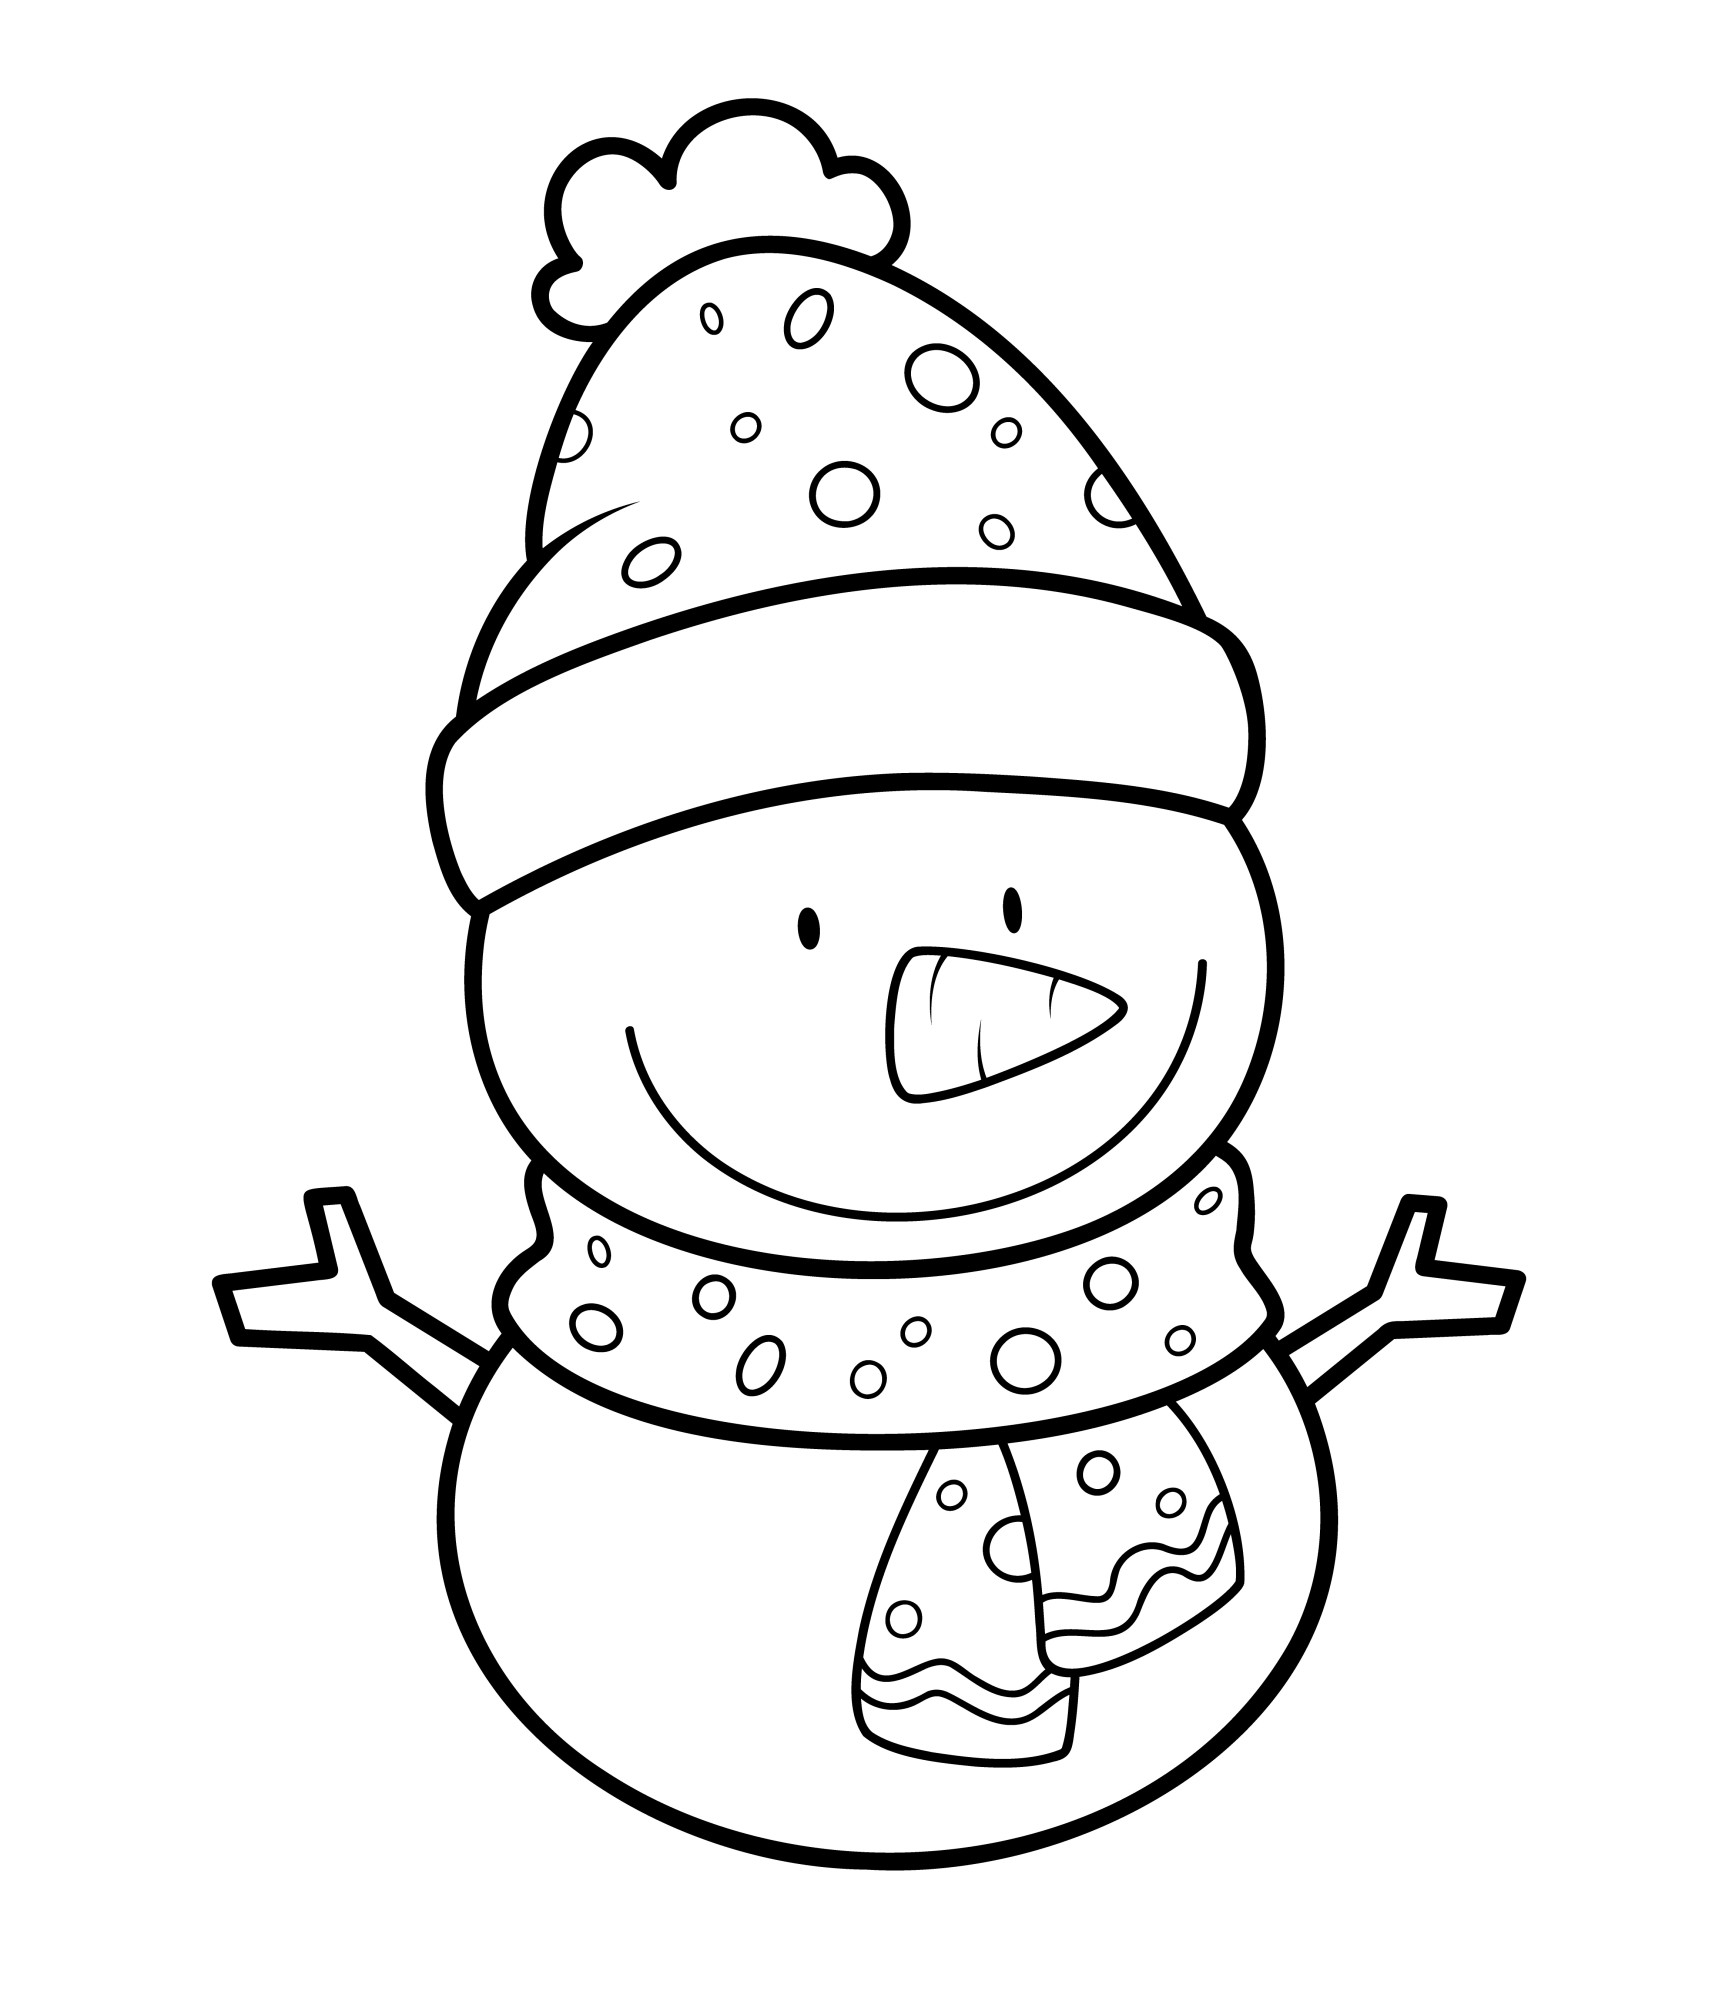 Раскраска для детей: маленький снеговик в шапке и шарфе